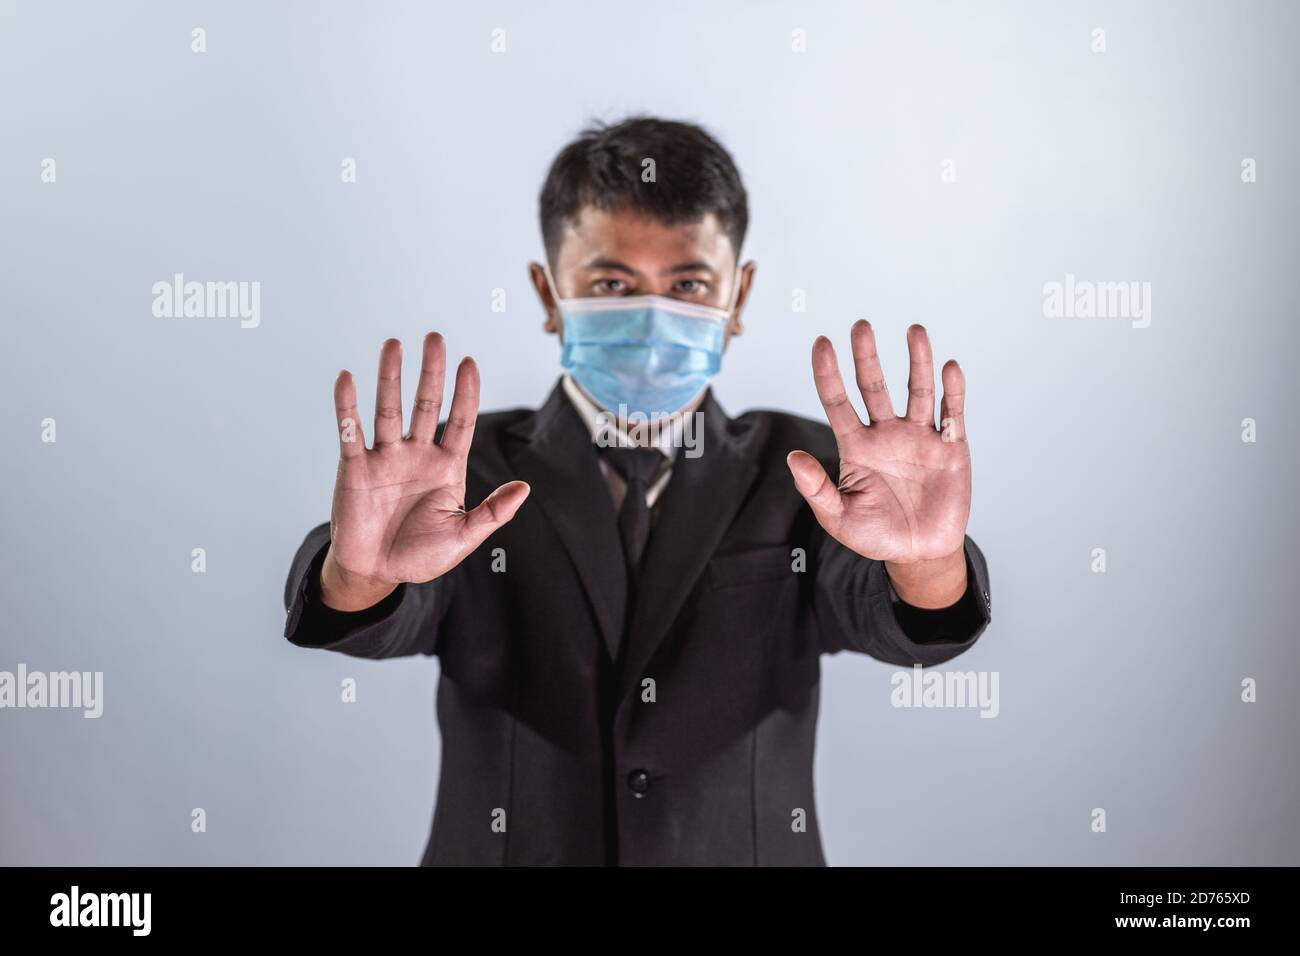 Los empresarios asiáticos usan una máscara para prevenir la enfermedad del coronavirus y muestran el signo de mano para detener el coronavirus. Foto de stock